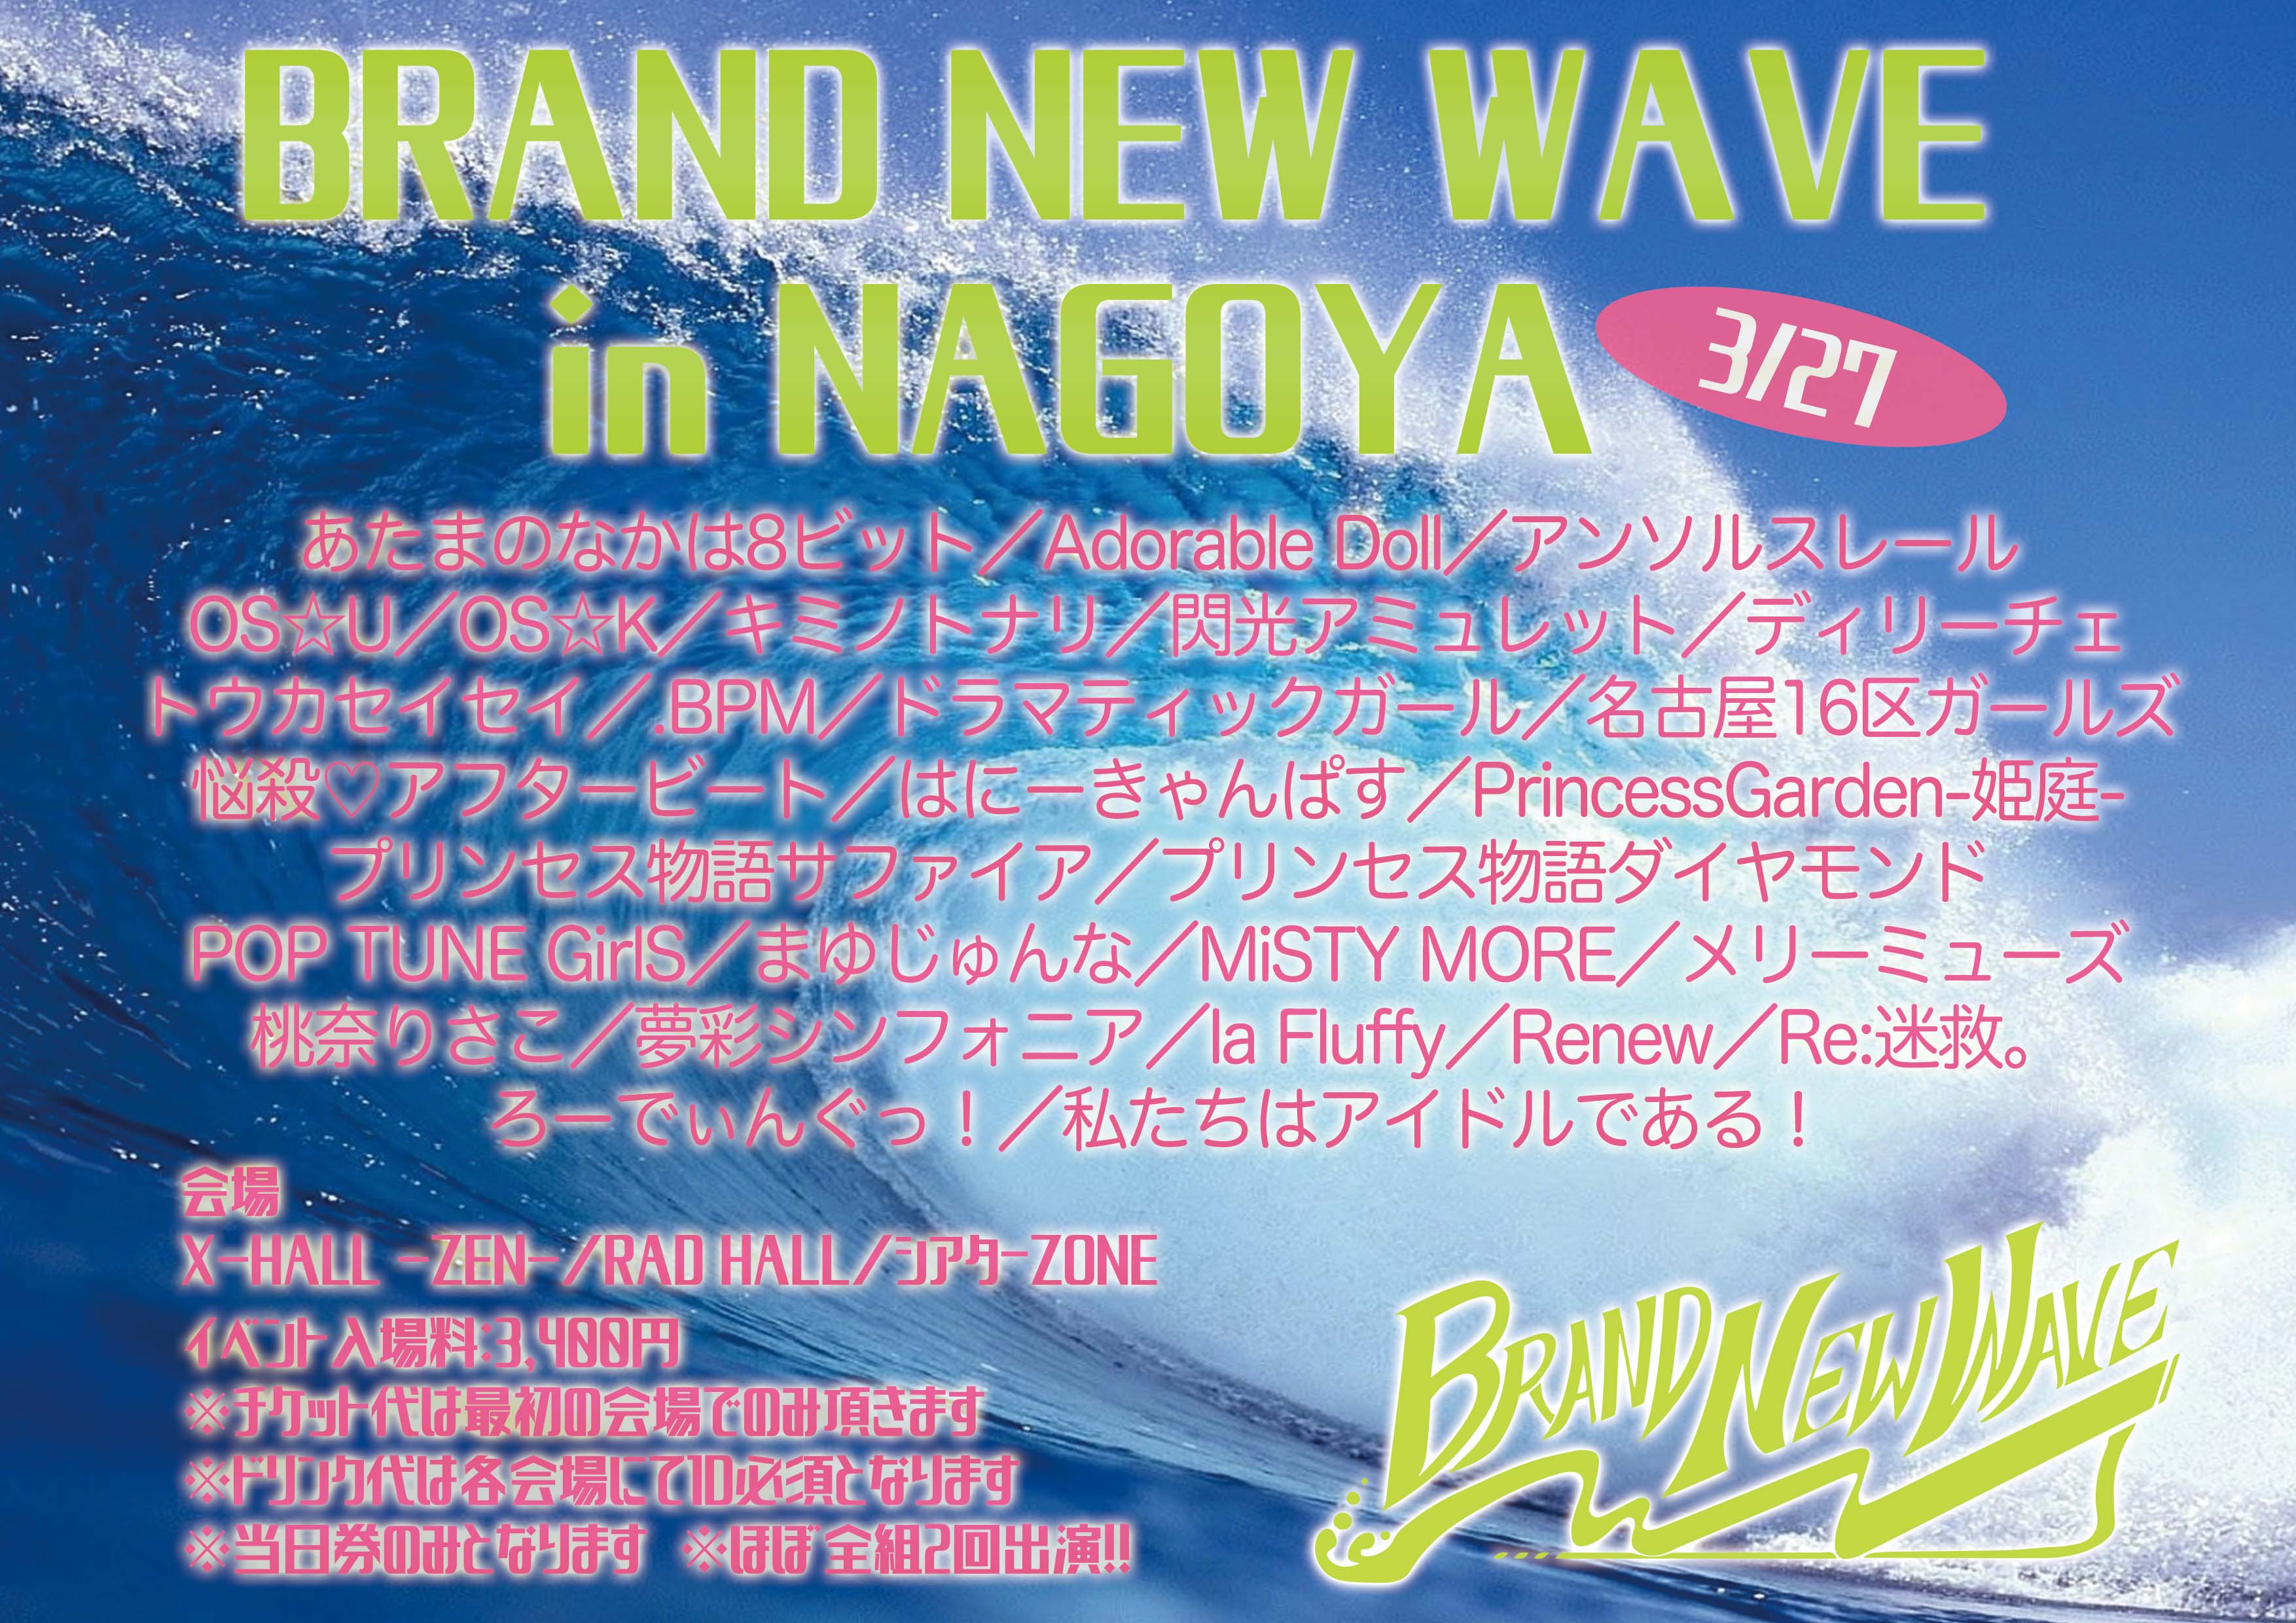 BRAND NEW WAVE in NAGOYA